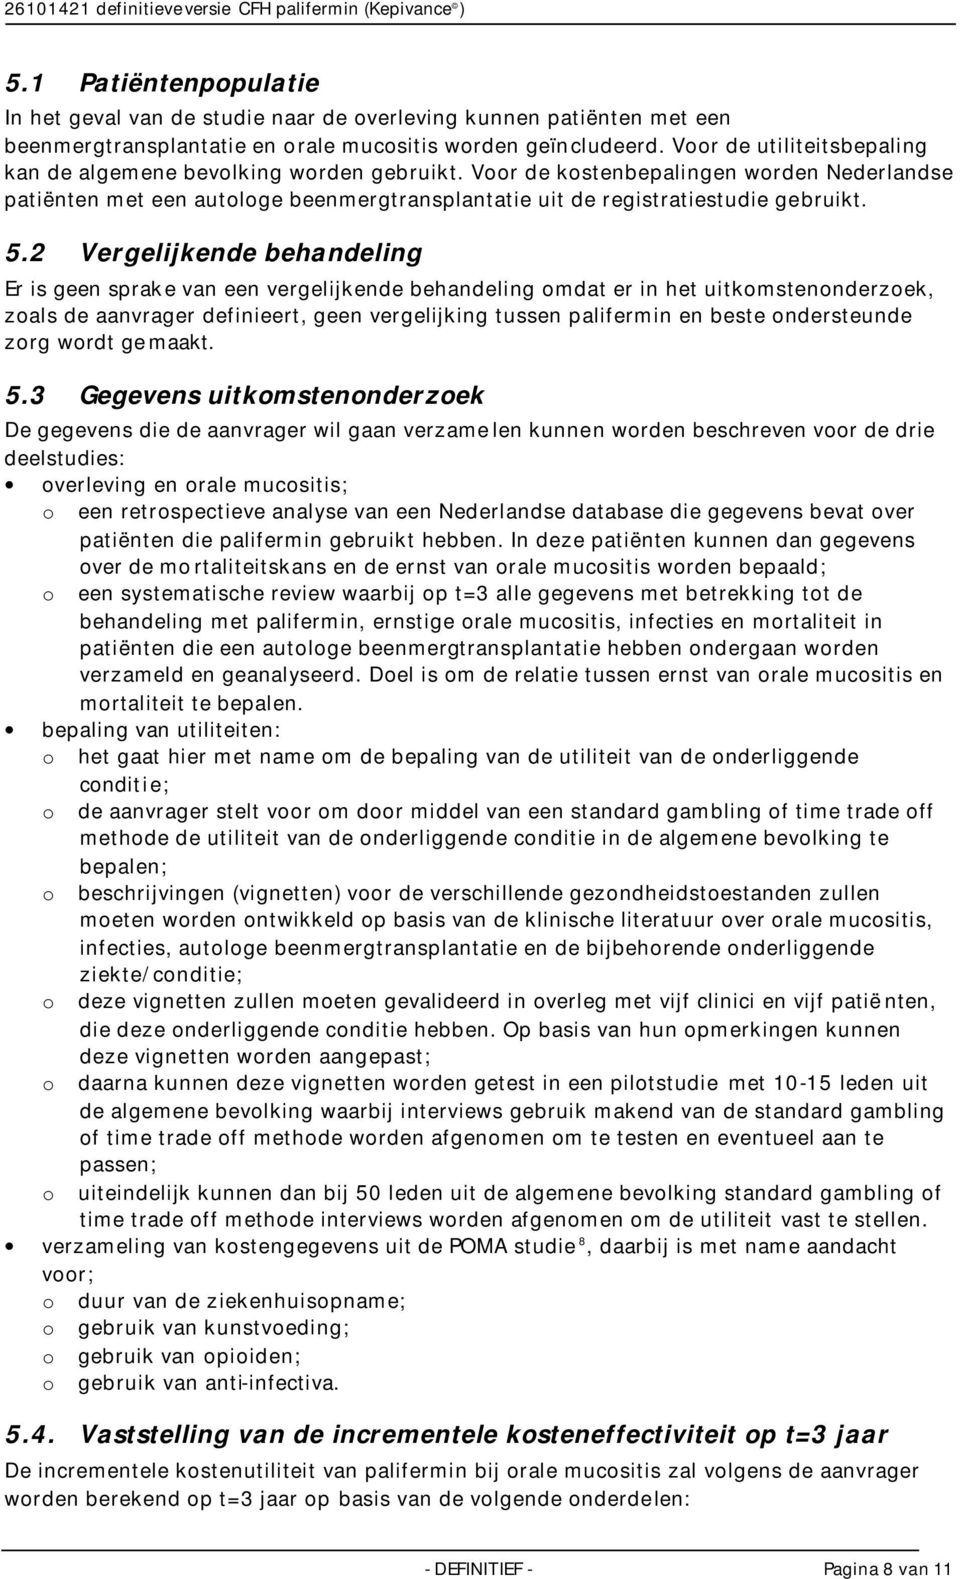 Voor de utiliteitsbepaling kan de algemene bevolking worden gebruikt. Voor de kostenbepalingen worden Nederlandse patiënten met een autologe beenmergtransplantatie uit de registratiestudie gebruikt.